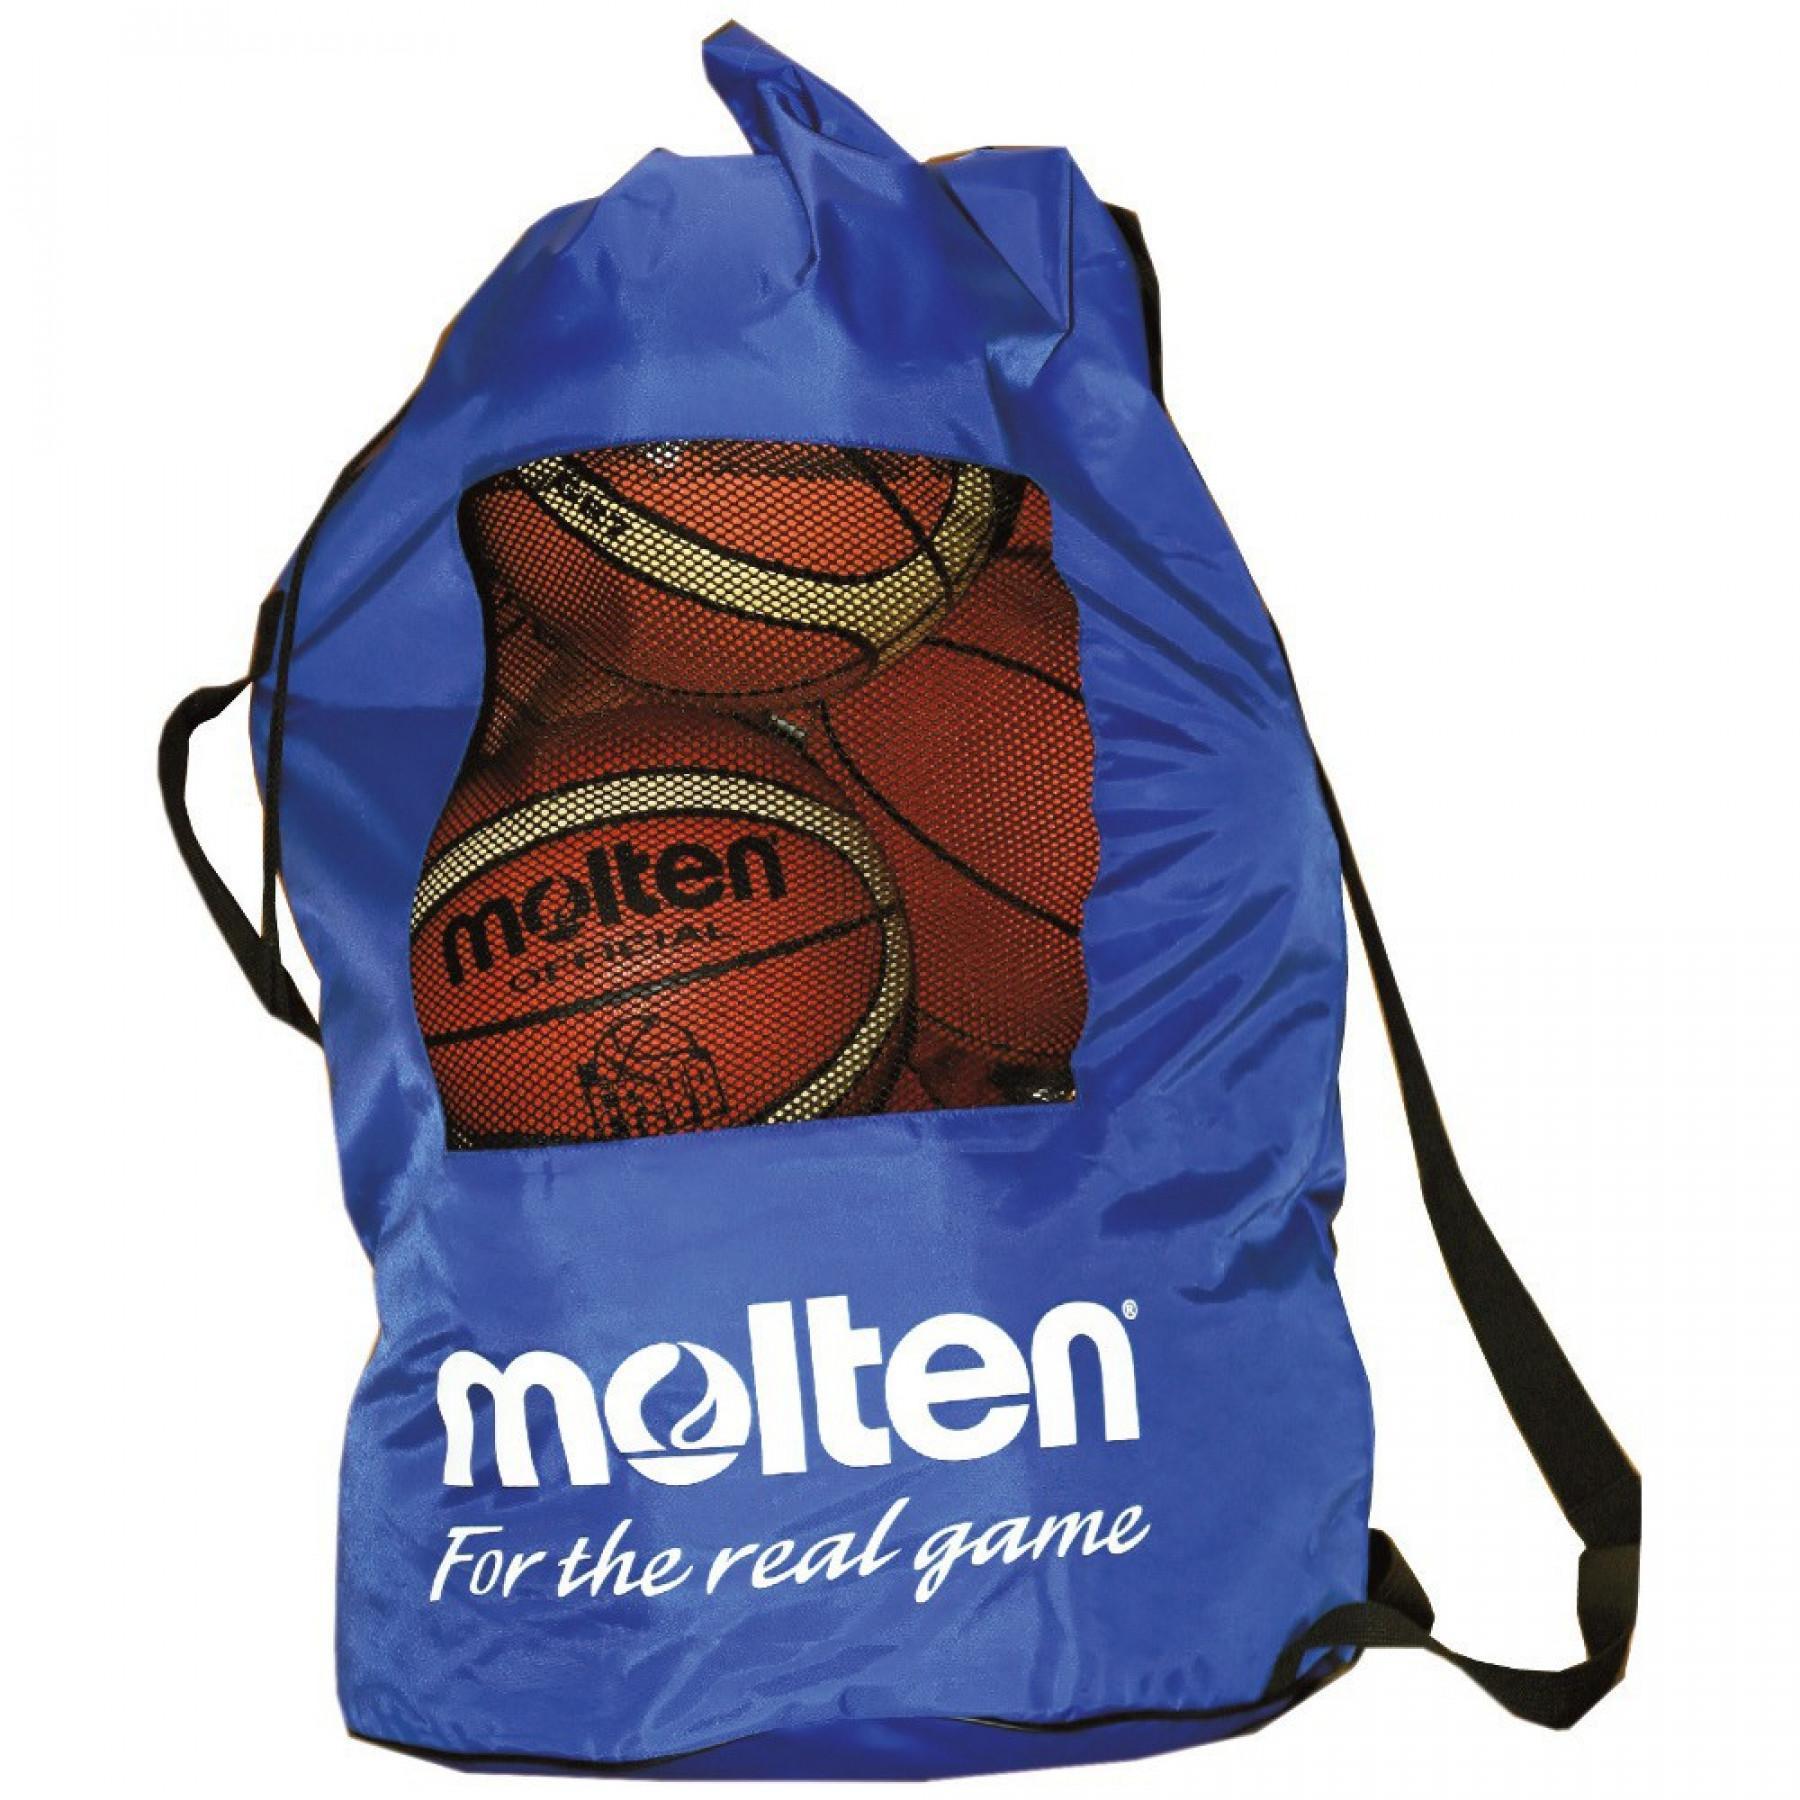 Team balloon bag Molten